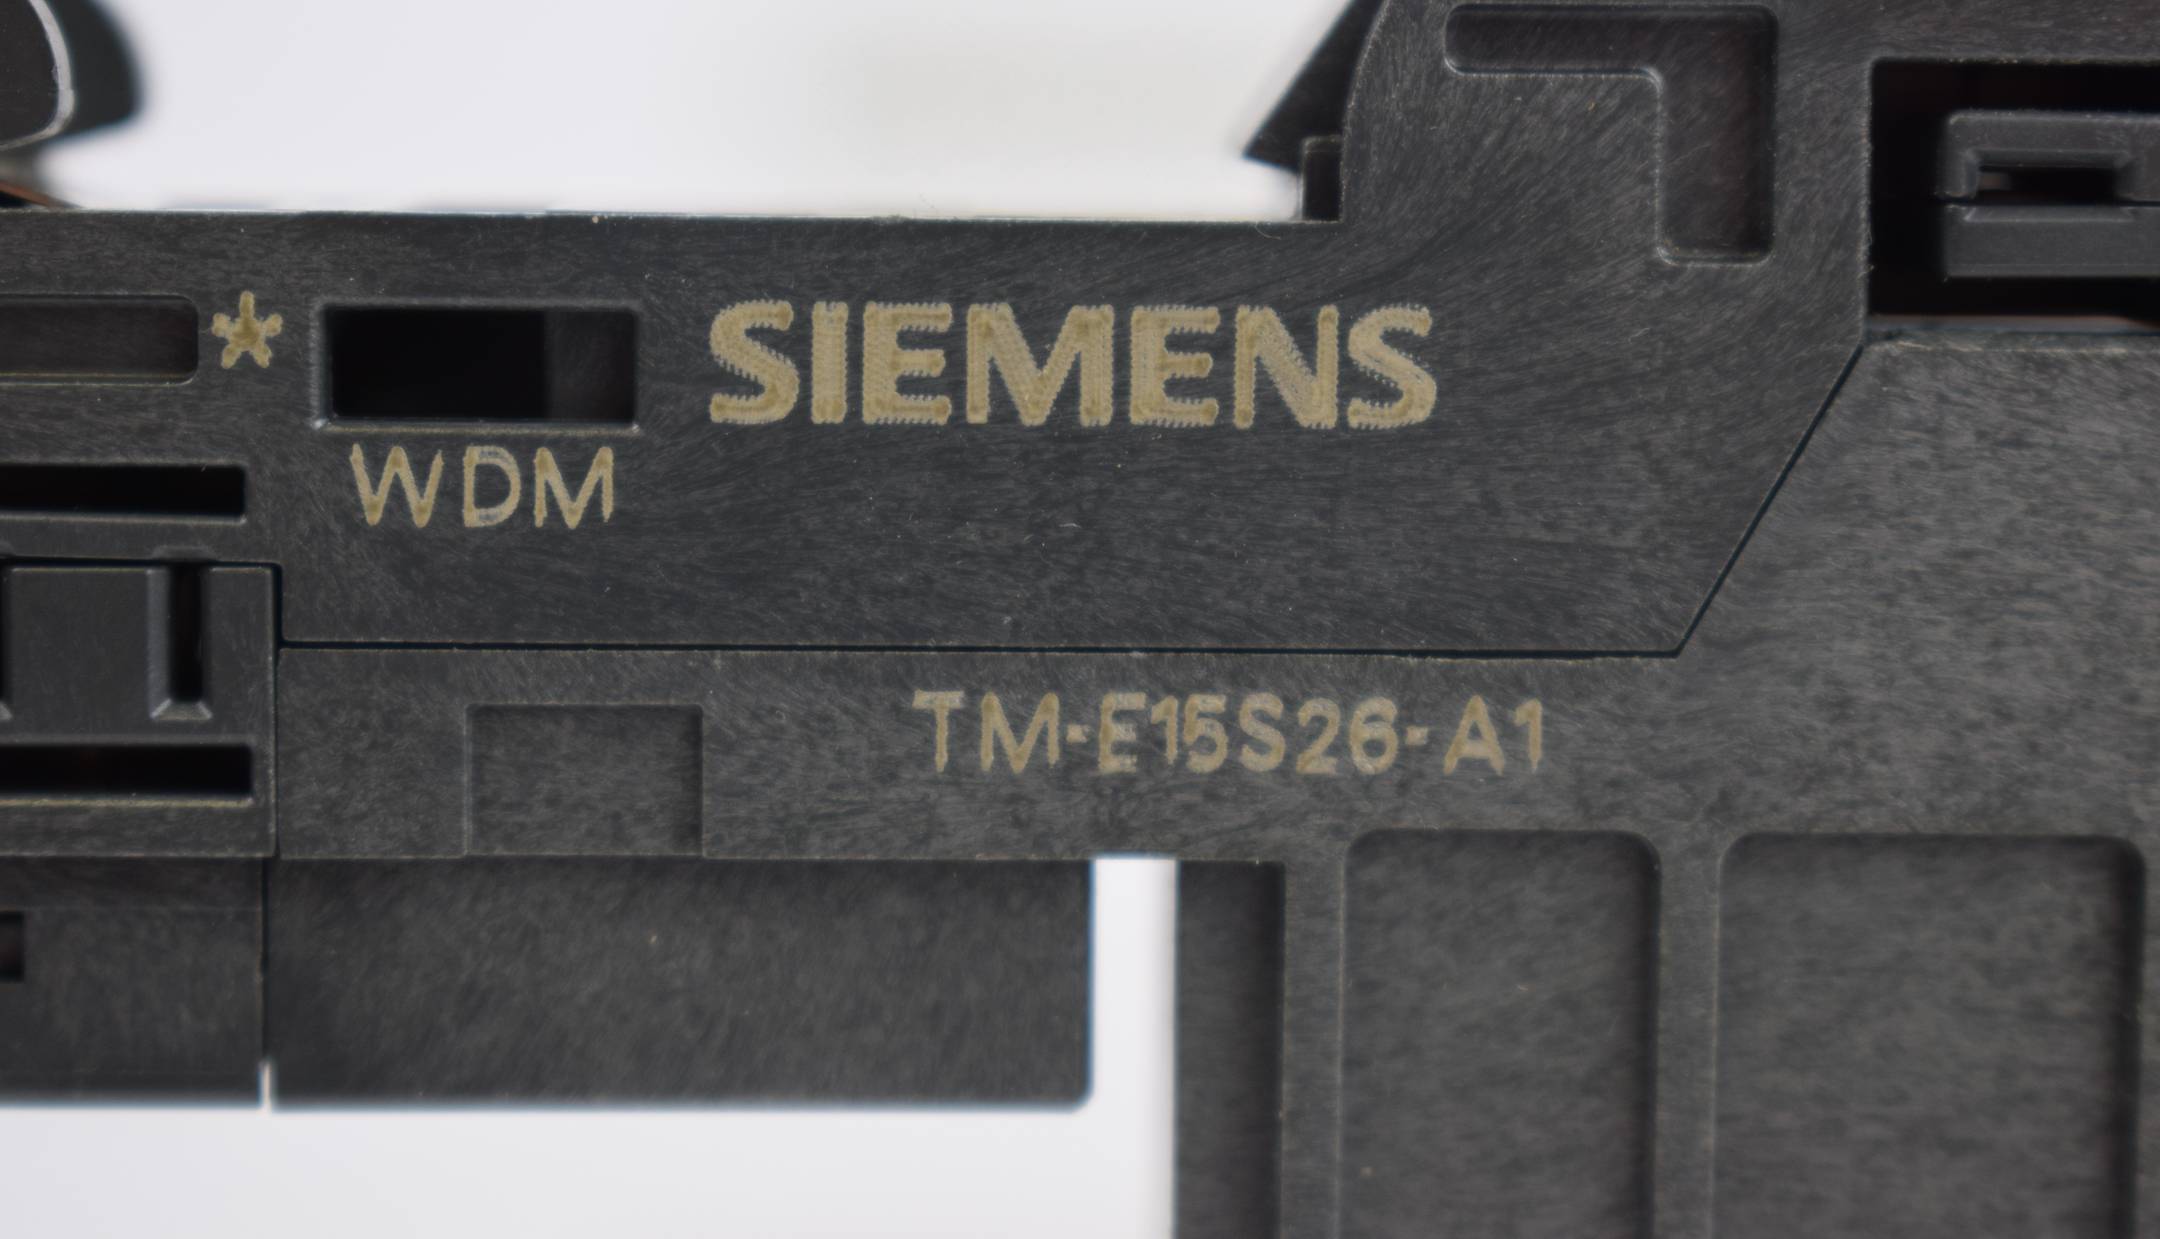 Siemens Simatic Terminalmodul 6ES7 193-4CA40-0AA0 ( TM-E15S26-A1 ) E1